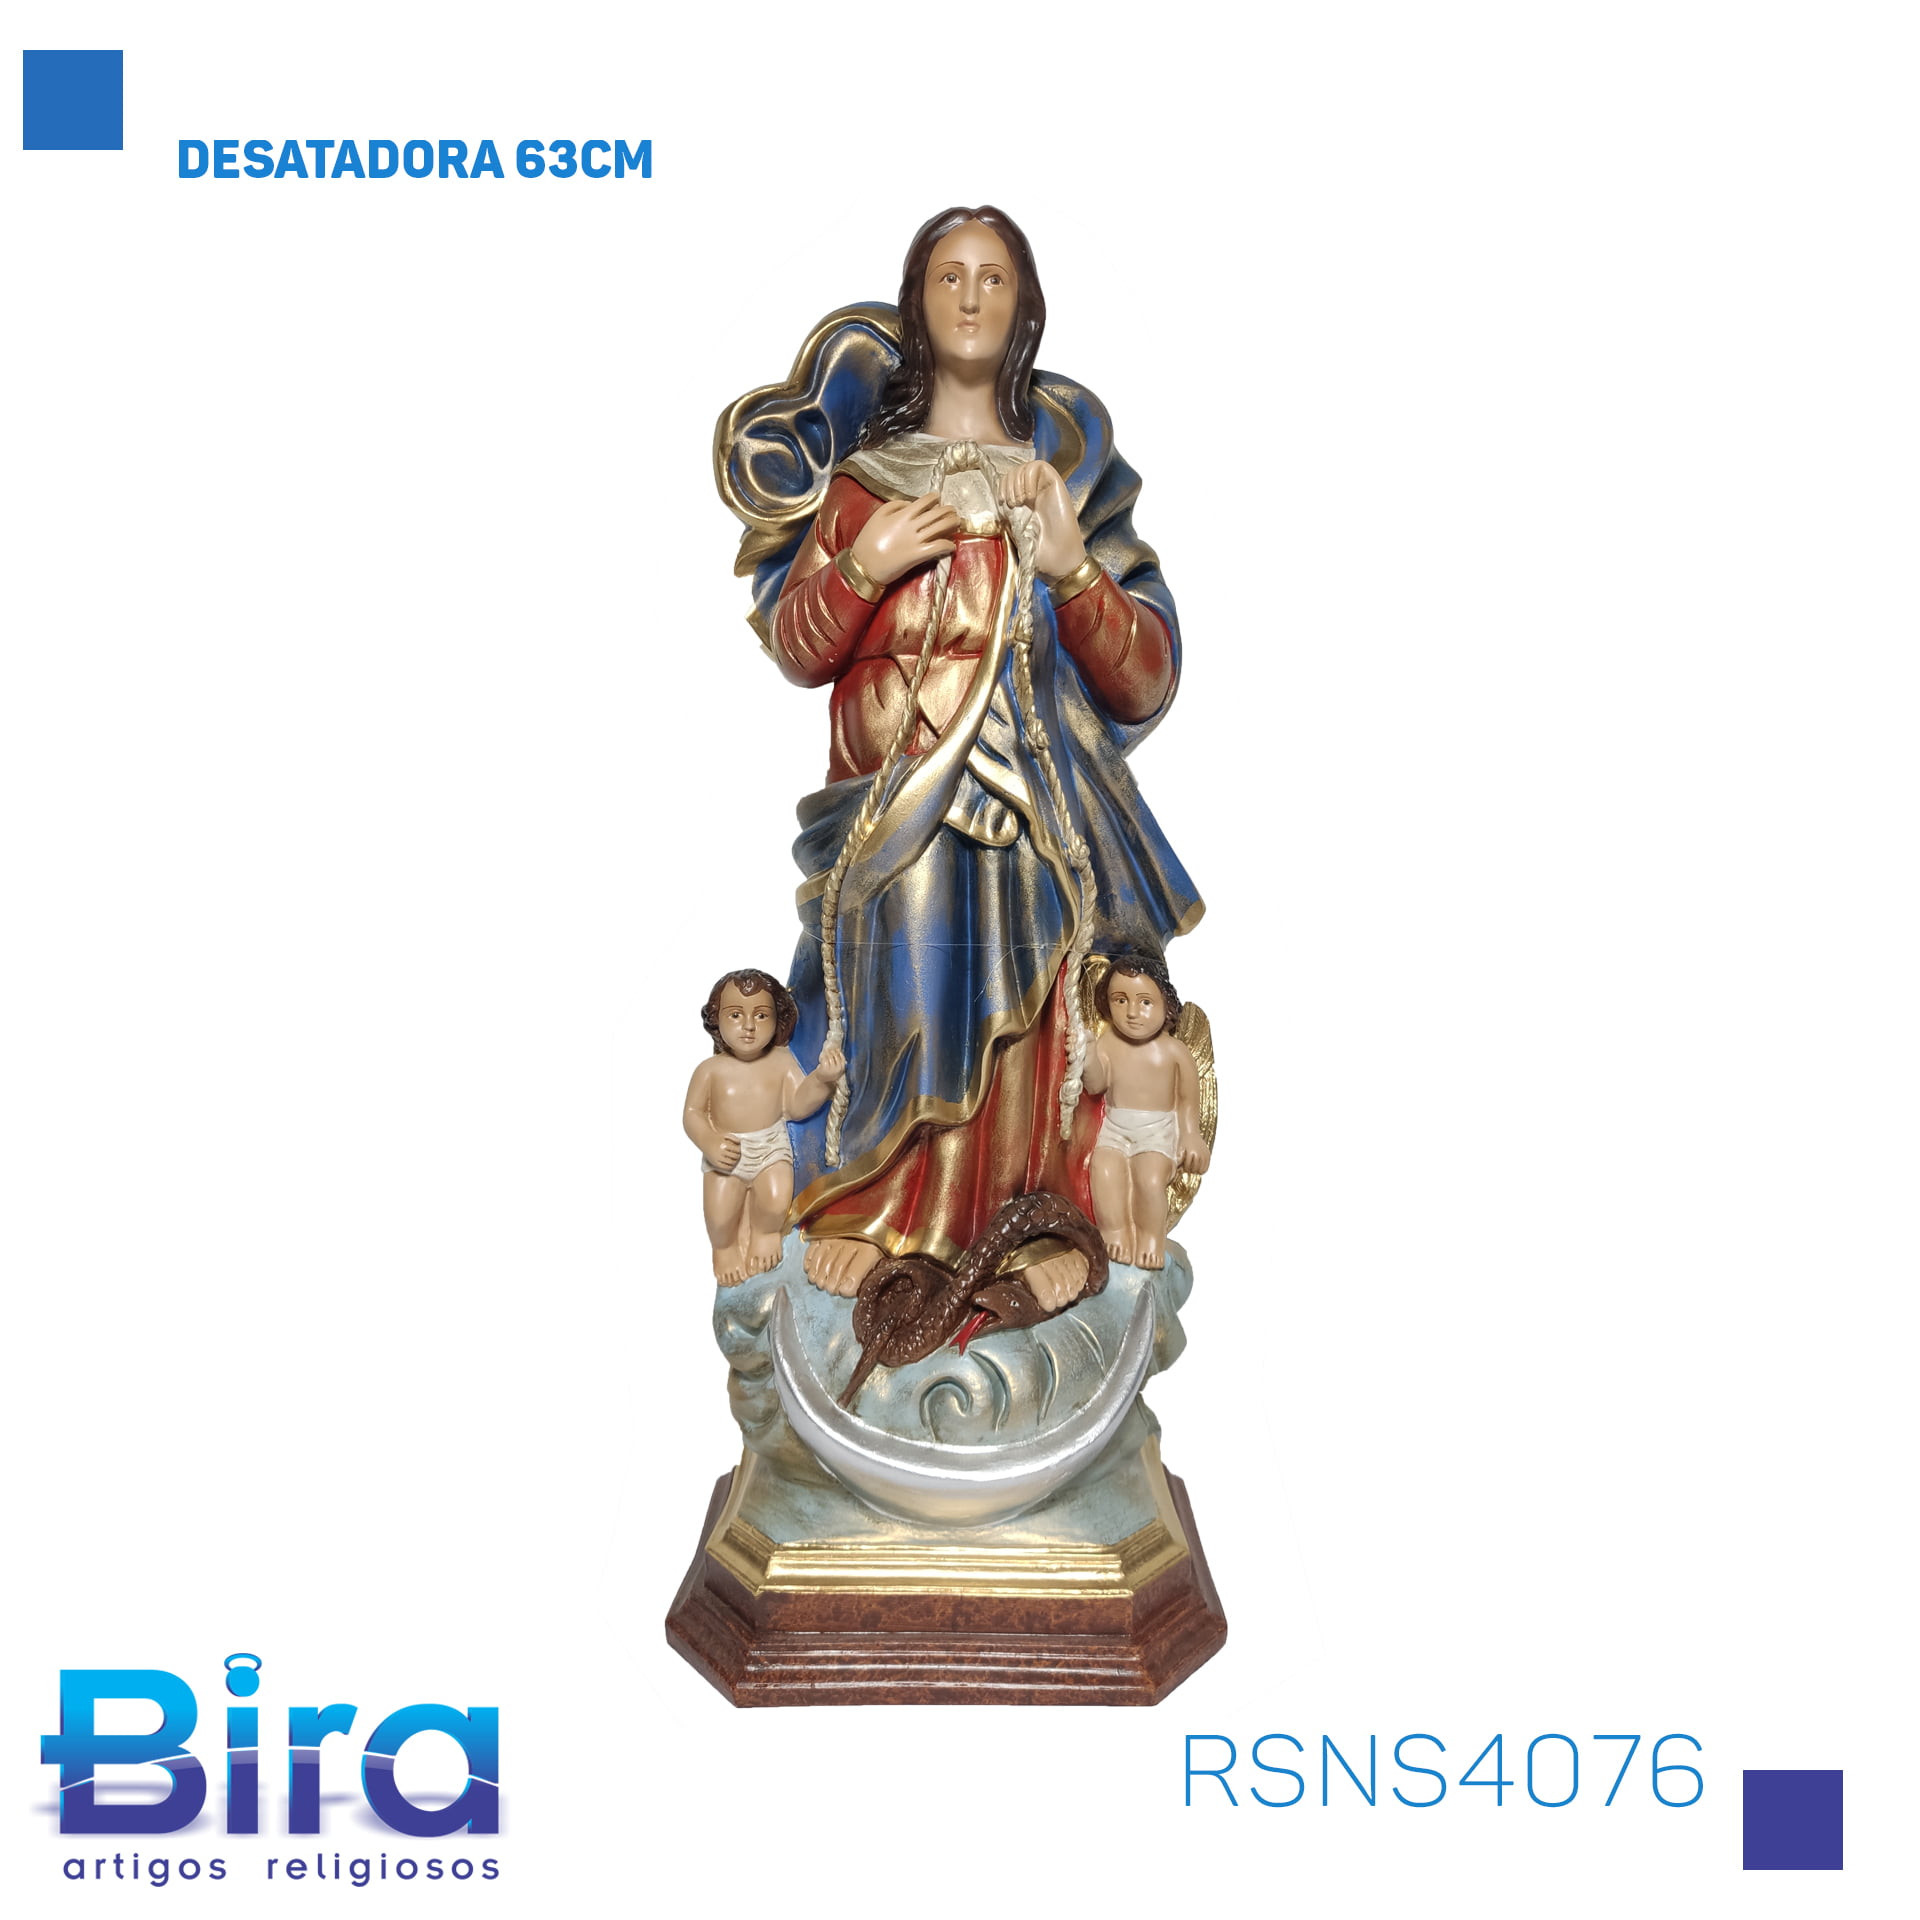 Bira Artigos Religiosos - DESATADORA 63CM Cód. RSNS4076